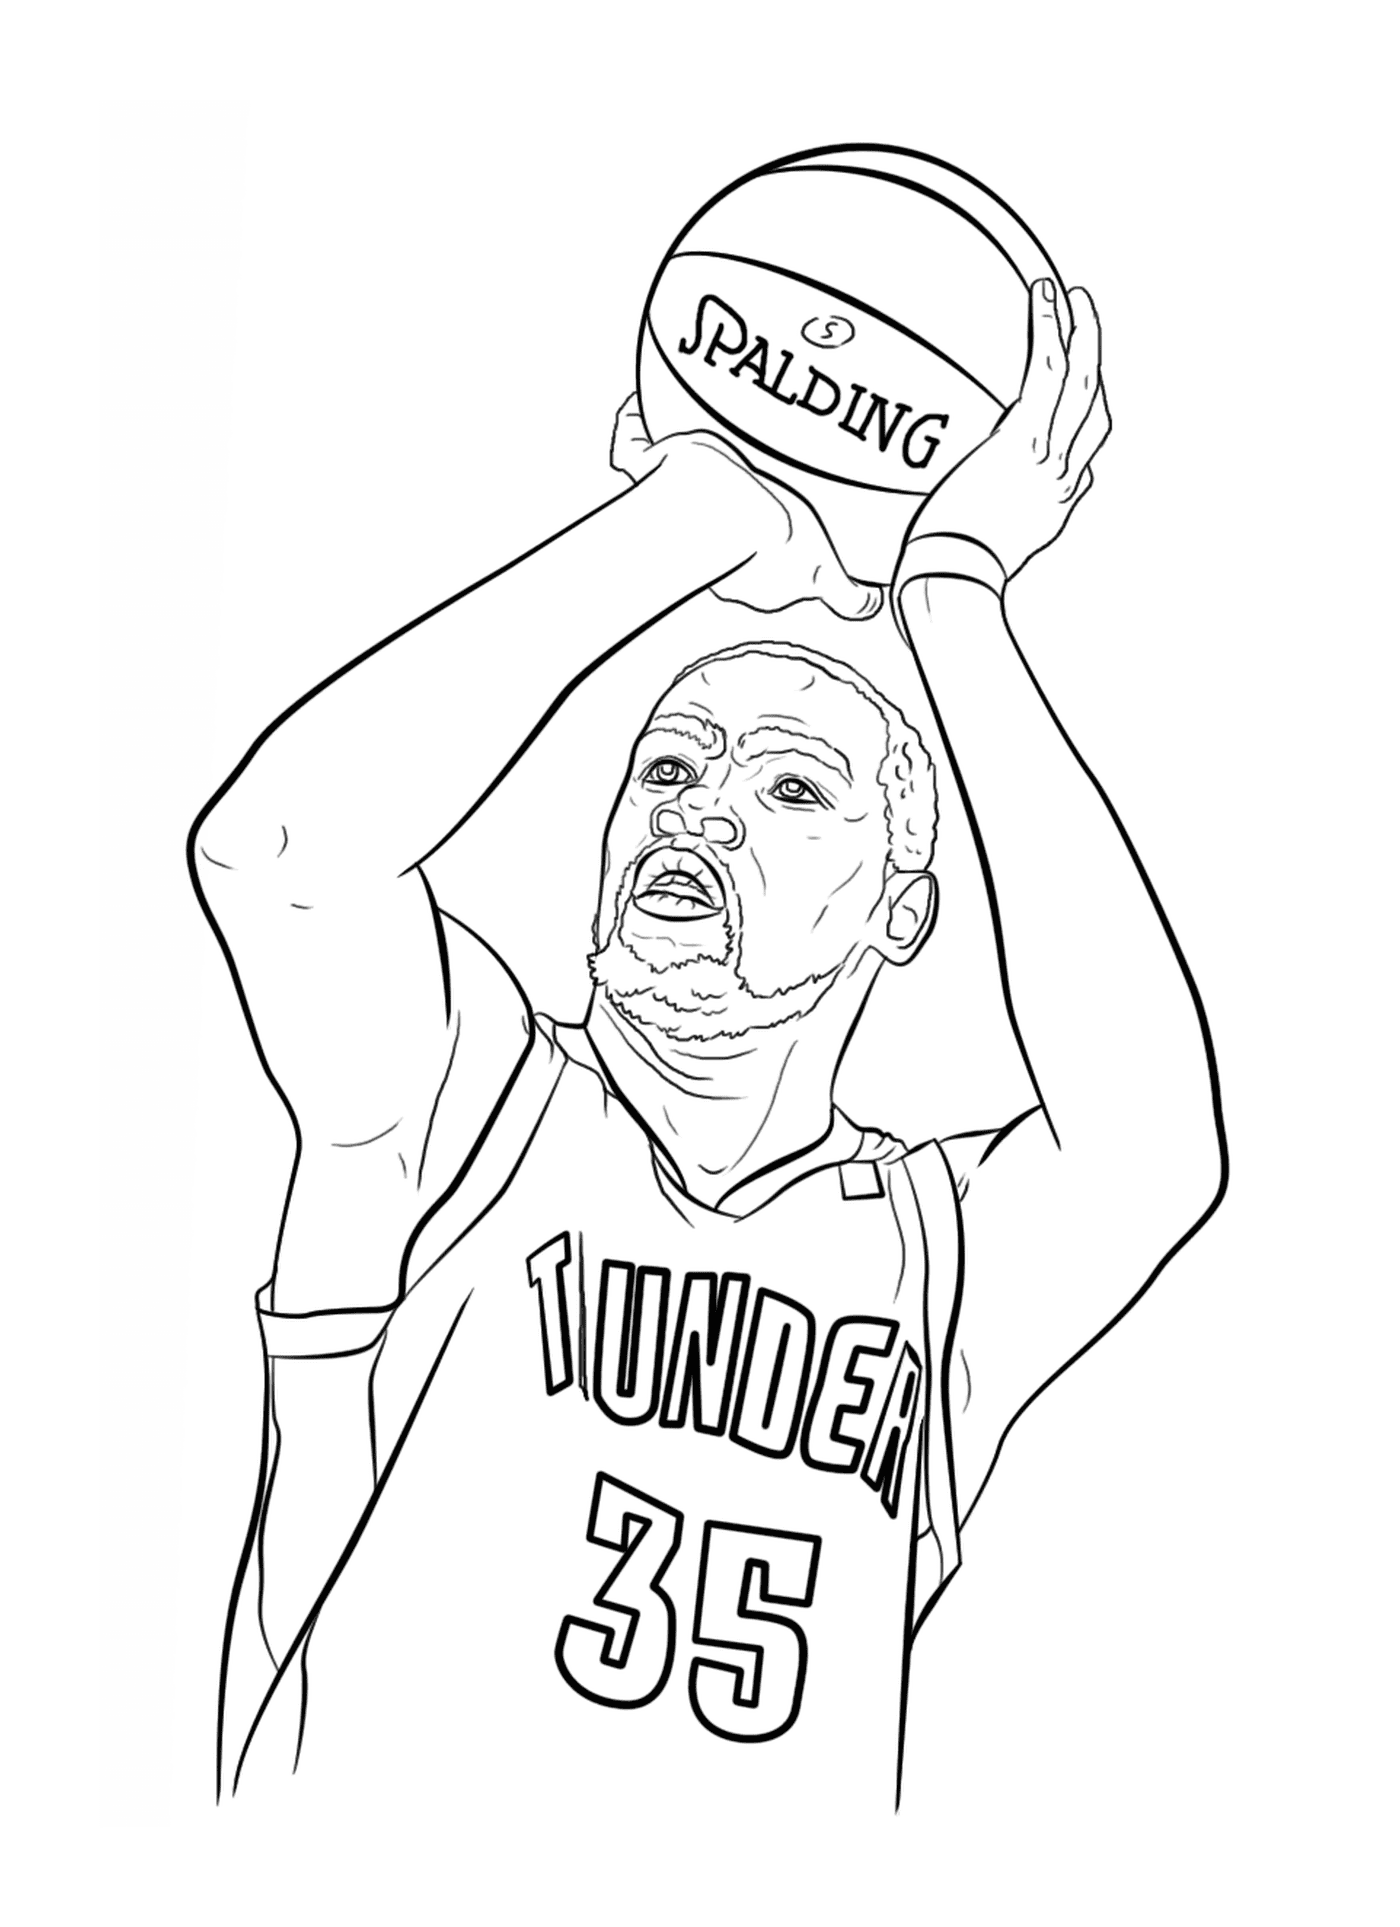  Kevin Durant, jugador de baloncesto 